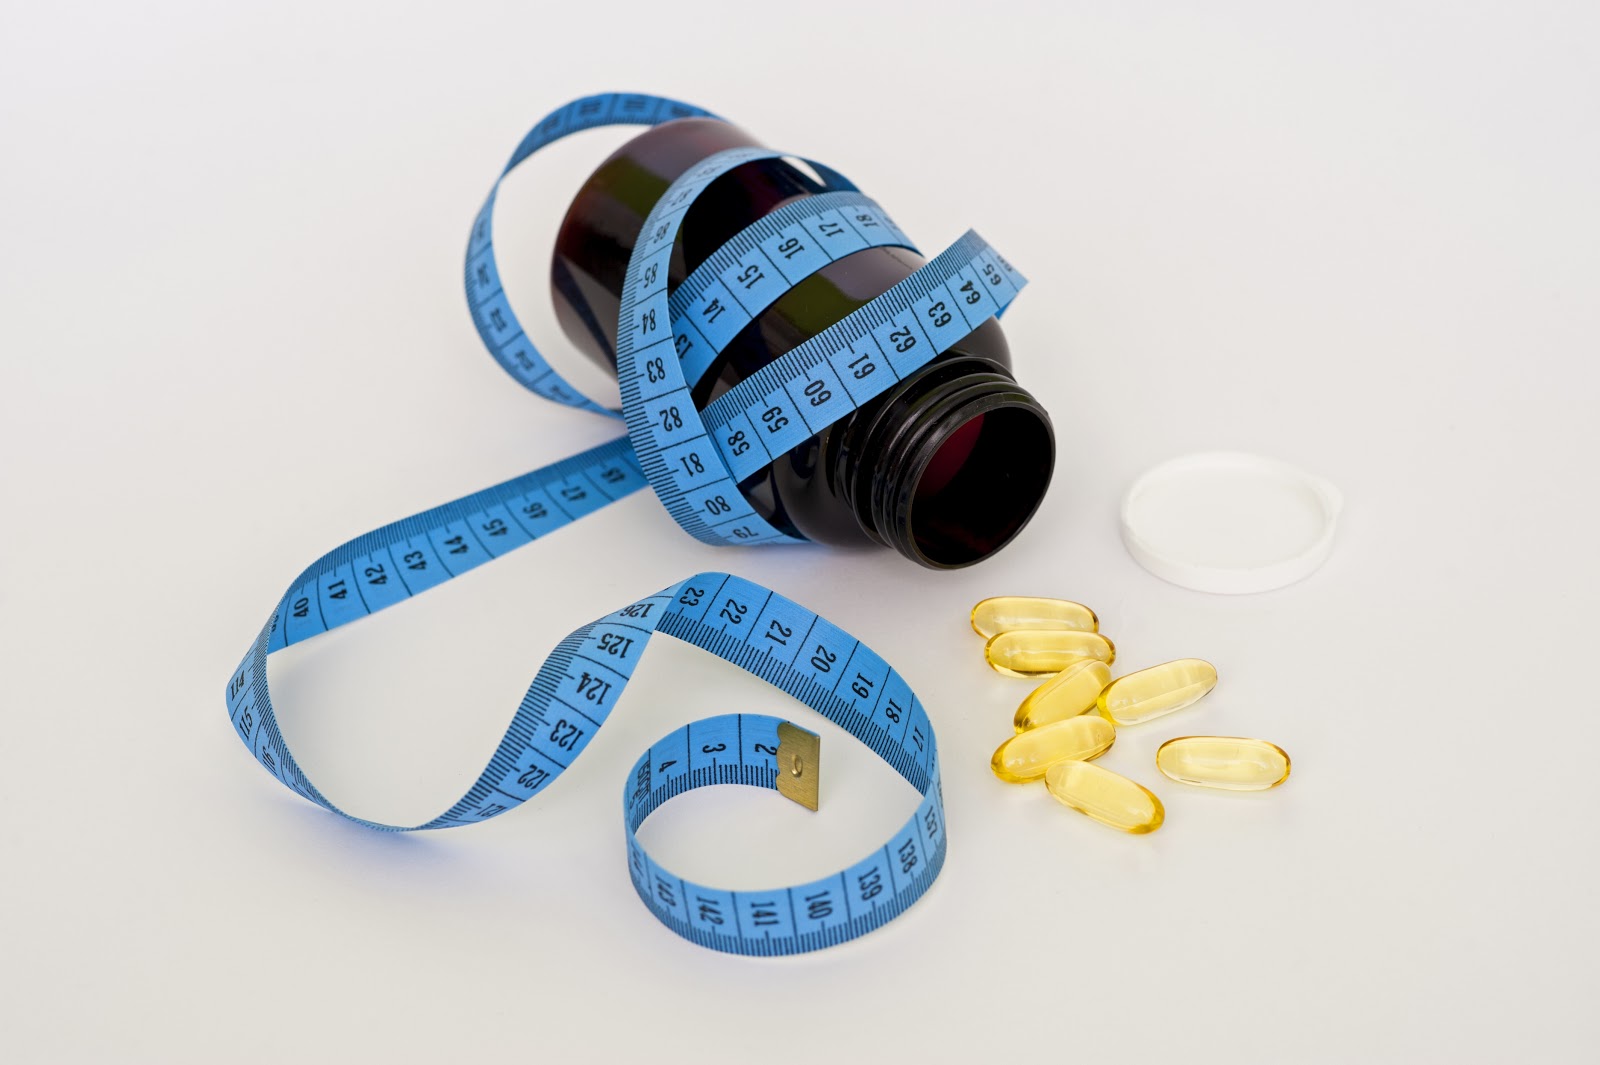 Giảm cân hiệu quả không dùng thuốc giúp bạn có vòng “eo con kiến” chỉ trong 1 tuần